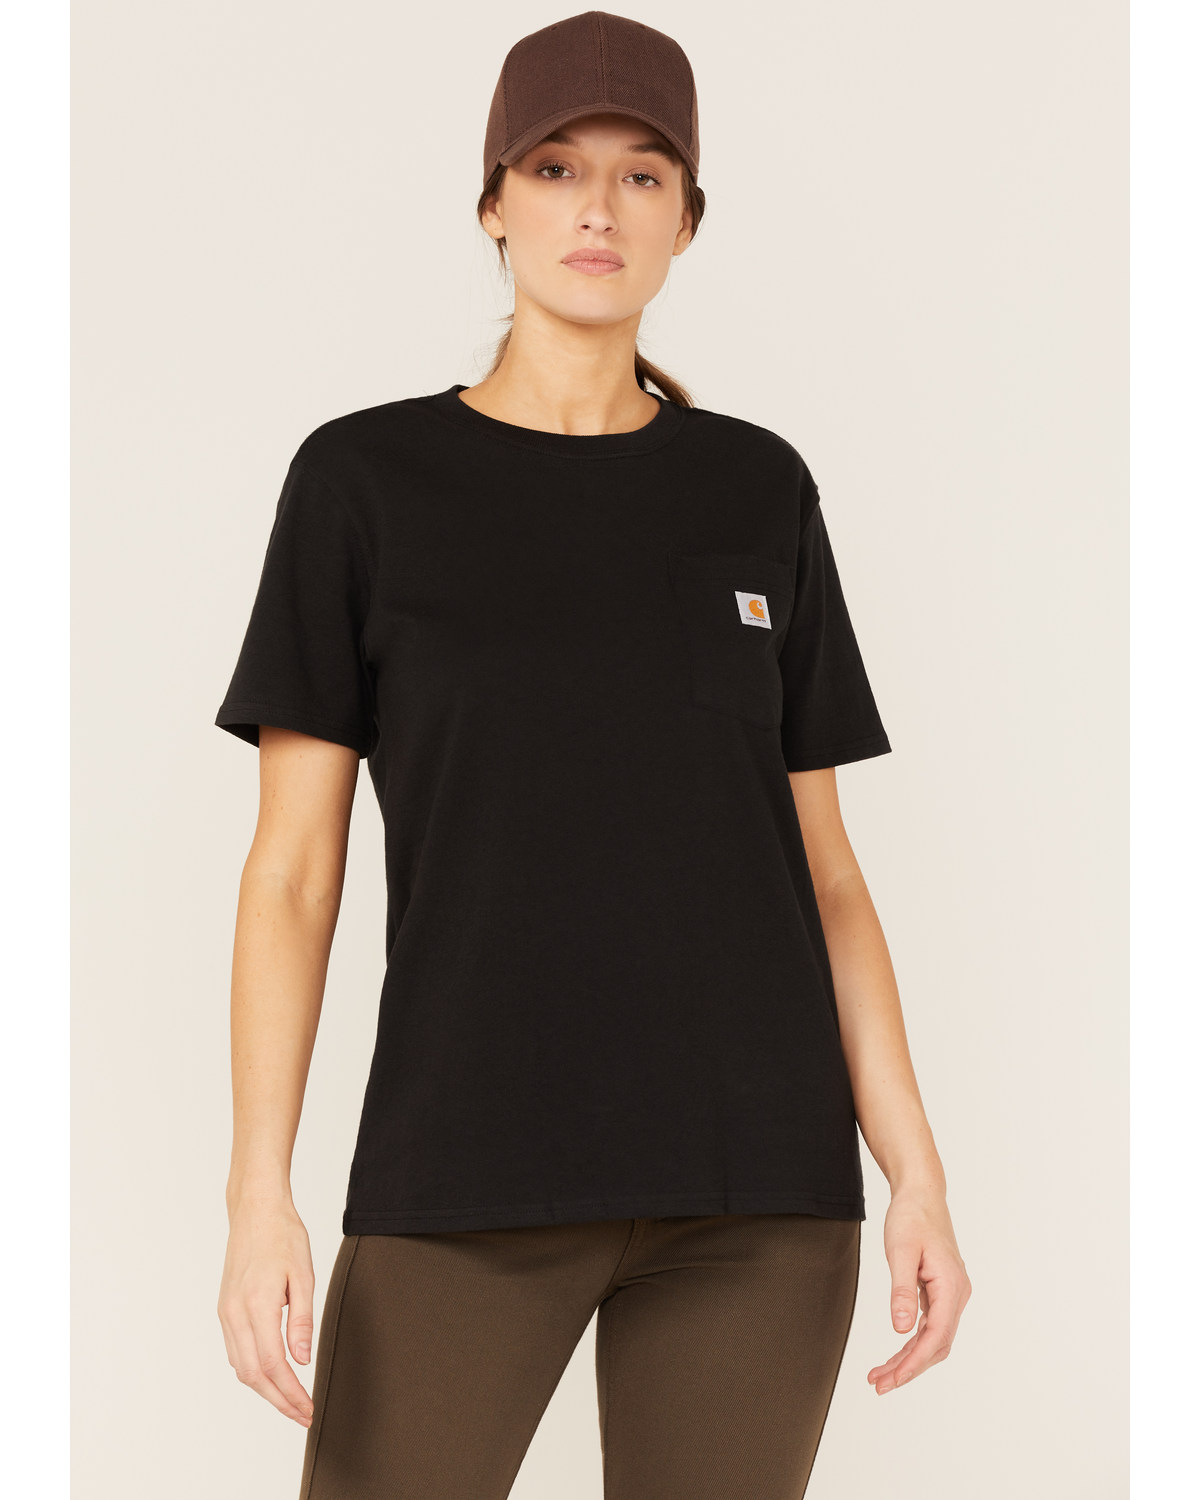 Carhartt Women's Workwear Short Sleeve Pocket T-Shirt